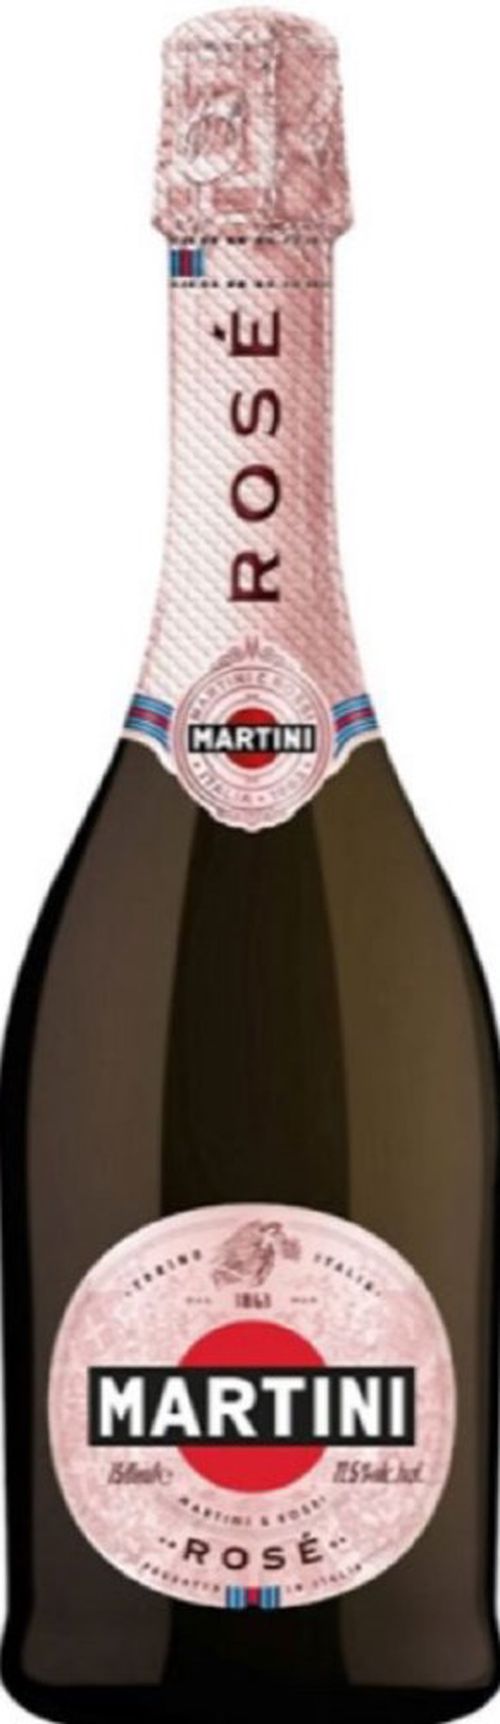 Martini Prosecco D.O.C. Rosé 0,75l 11,5%